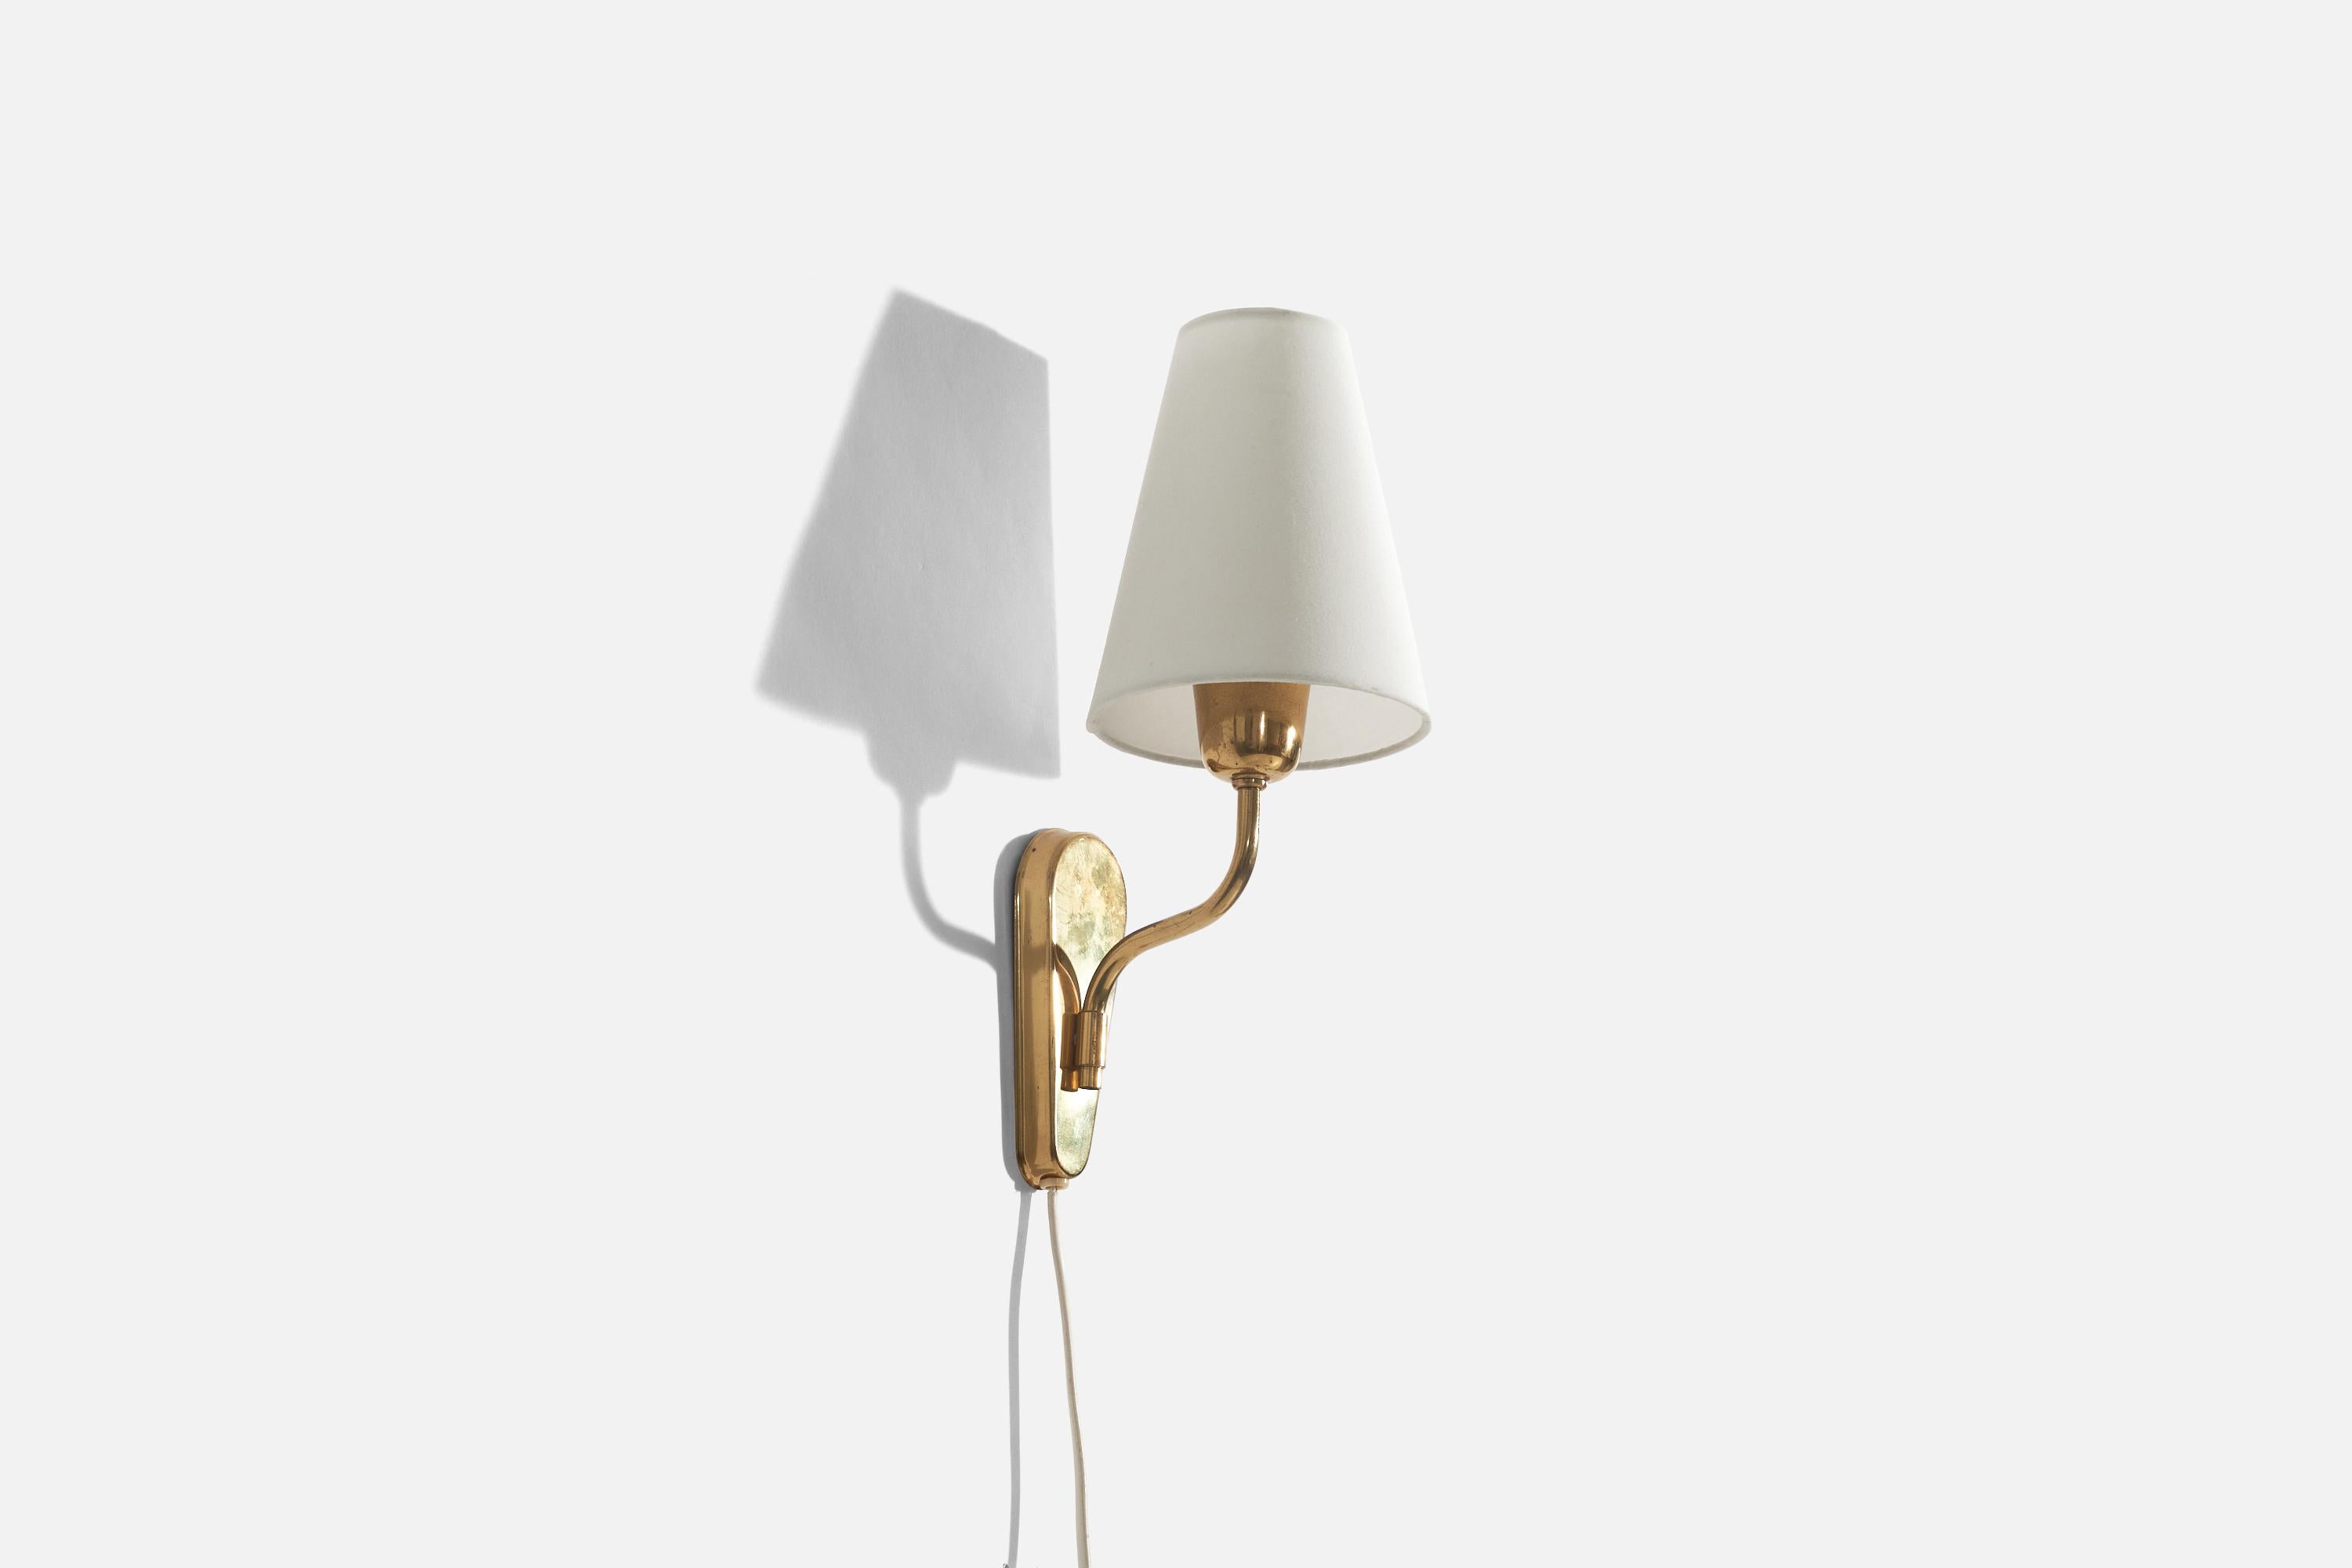 Wandleuchte aus Messing und Stoff, entworfen und hergestellt von Fog & Mørup, Dänemark, ca. 1950er Jahre.

Verkauft mit Lampenschirm. 
Die angegebenen Maße beziehen sich auf den Wandleuchter mit Schirm. 
Abmessungen der Rückwand (Zoll) : 6 x 2,5